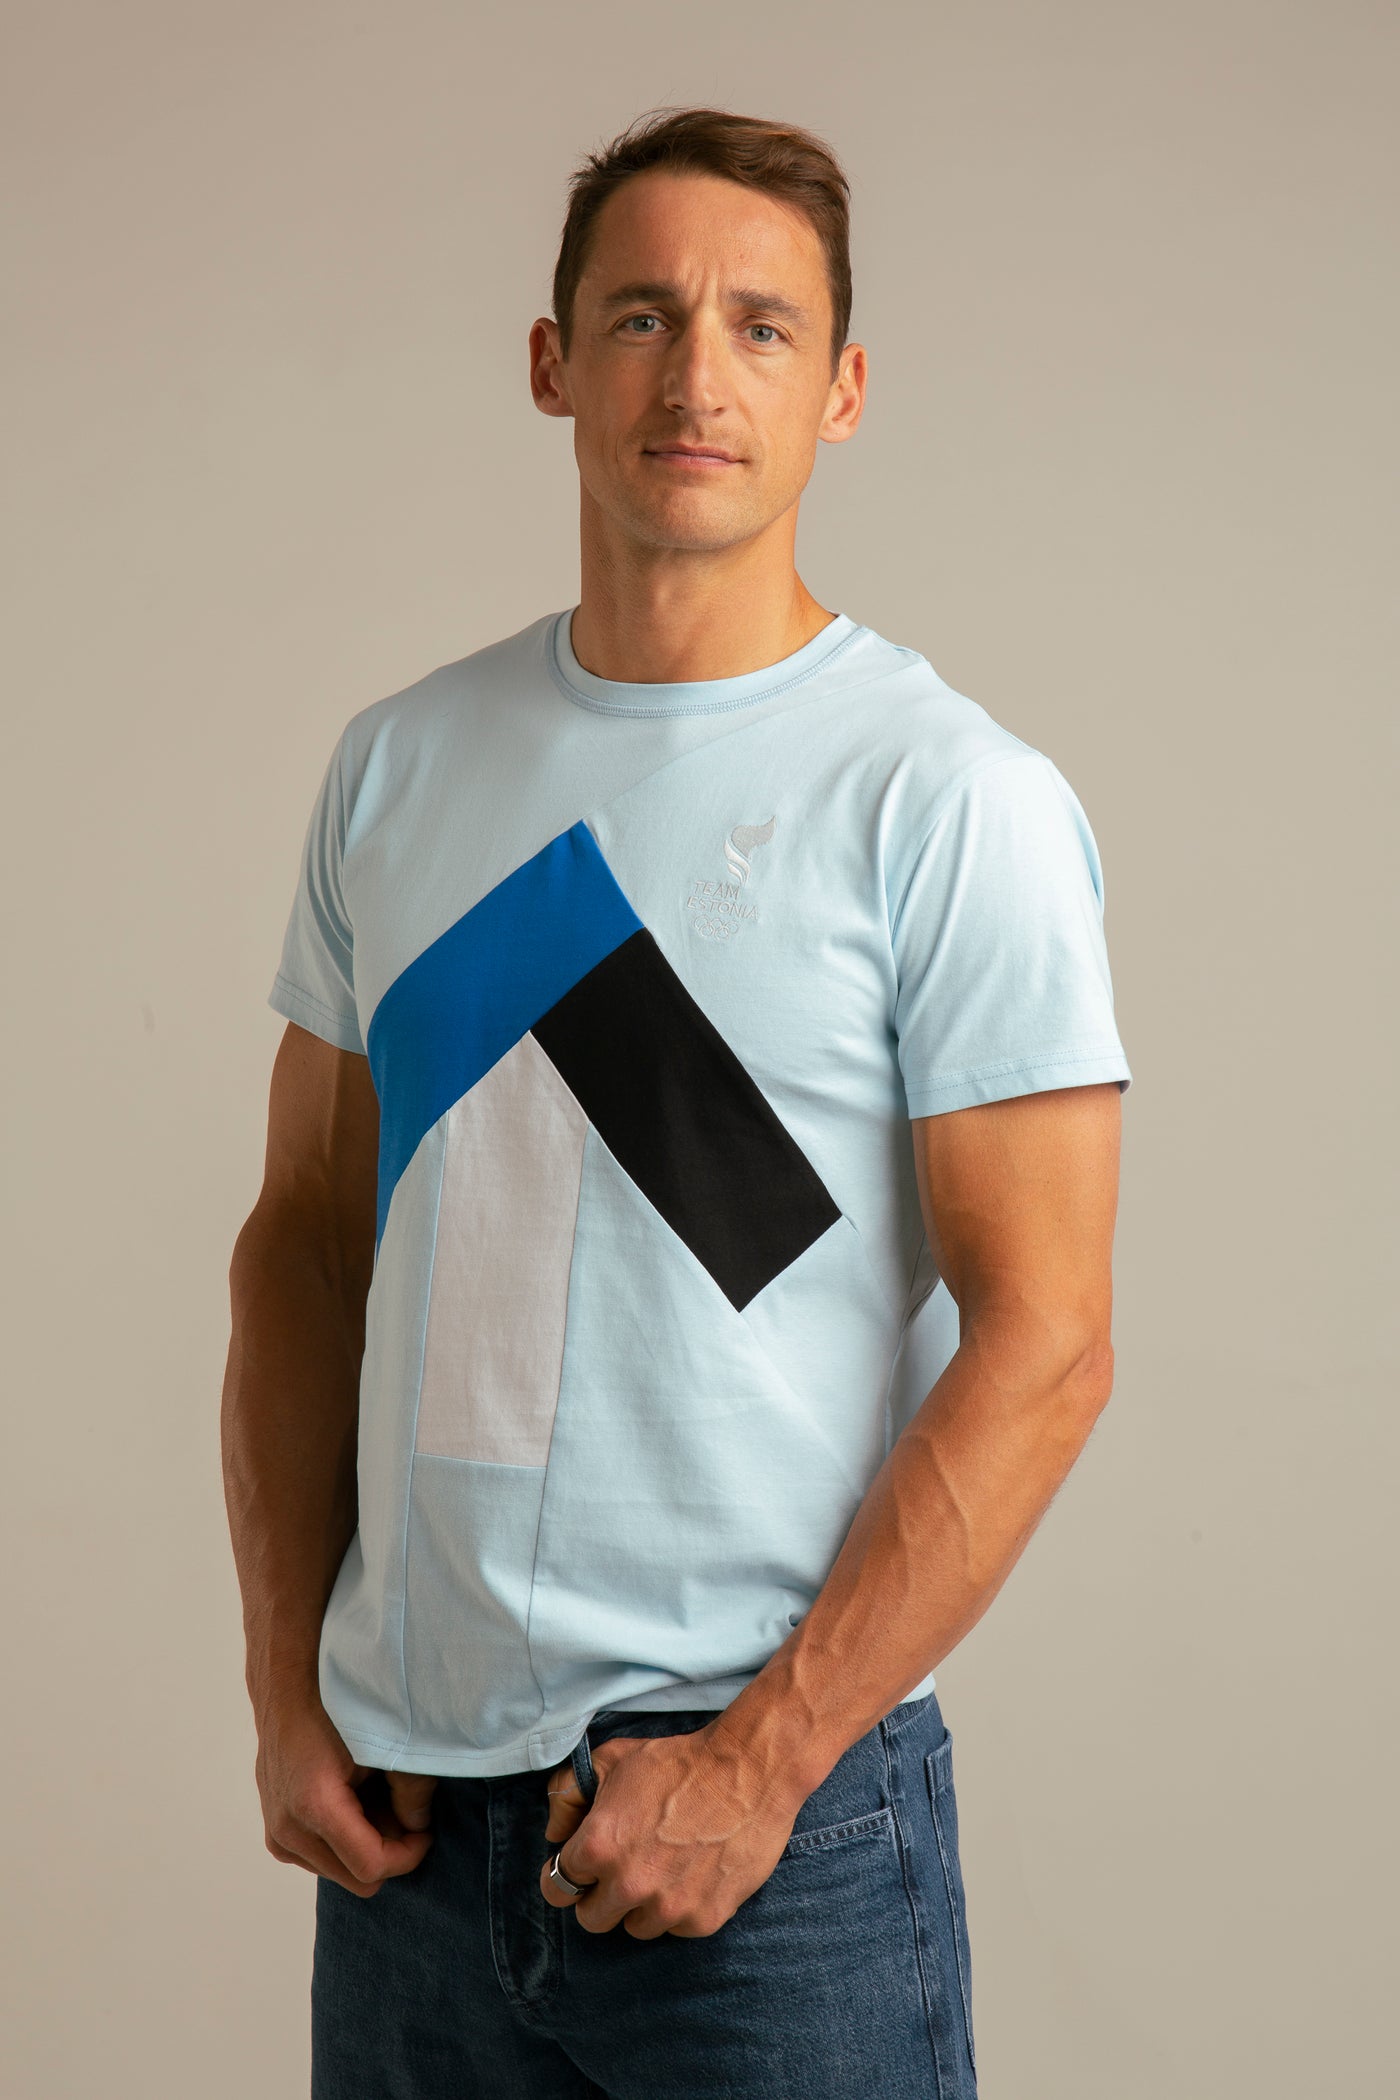 Up-shirt for men | Blue, Team Estonia